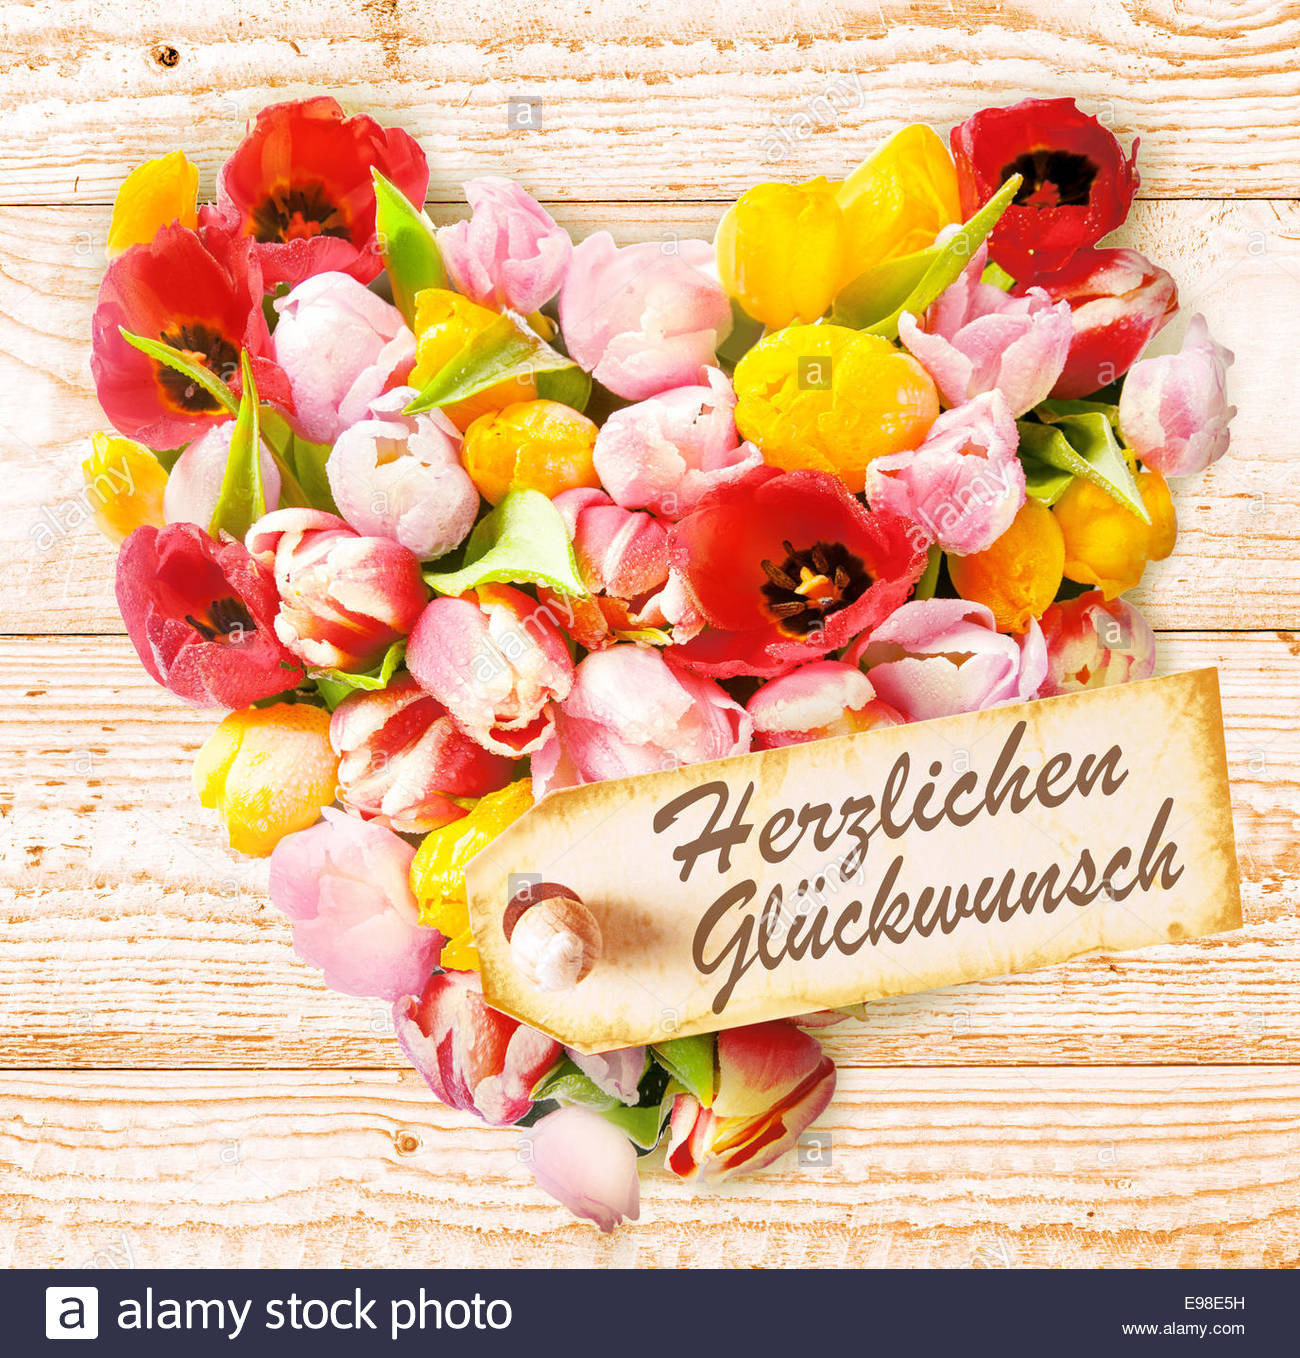 Geburtstagswünsche Mit Blumen
 Deutsche Geburtstagswünsche auf einem bunten floralen